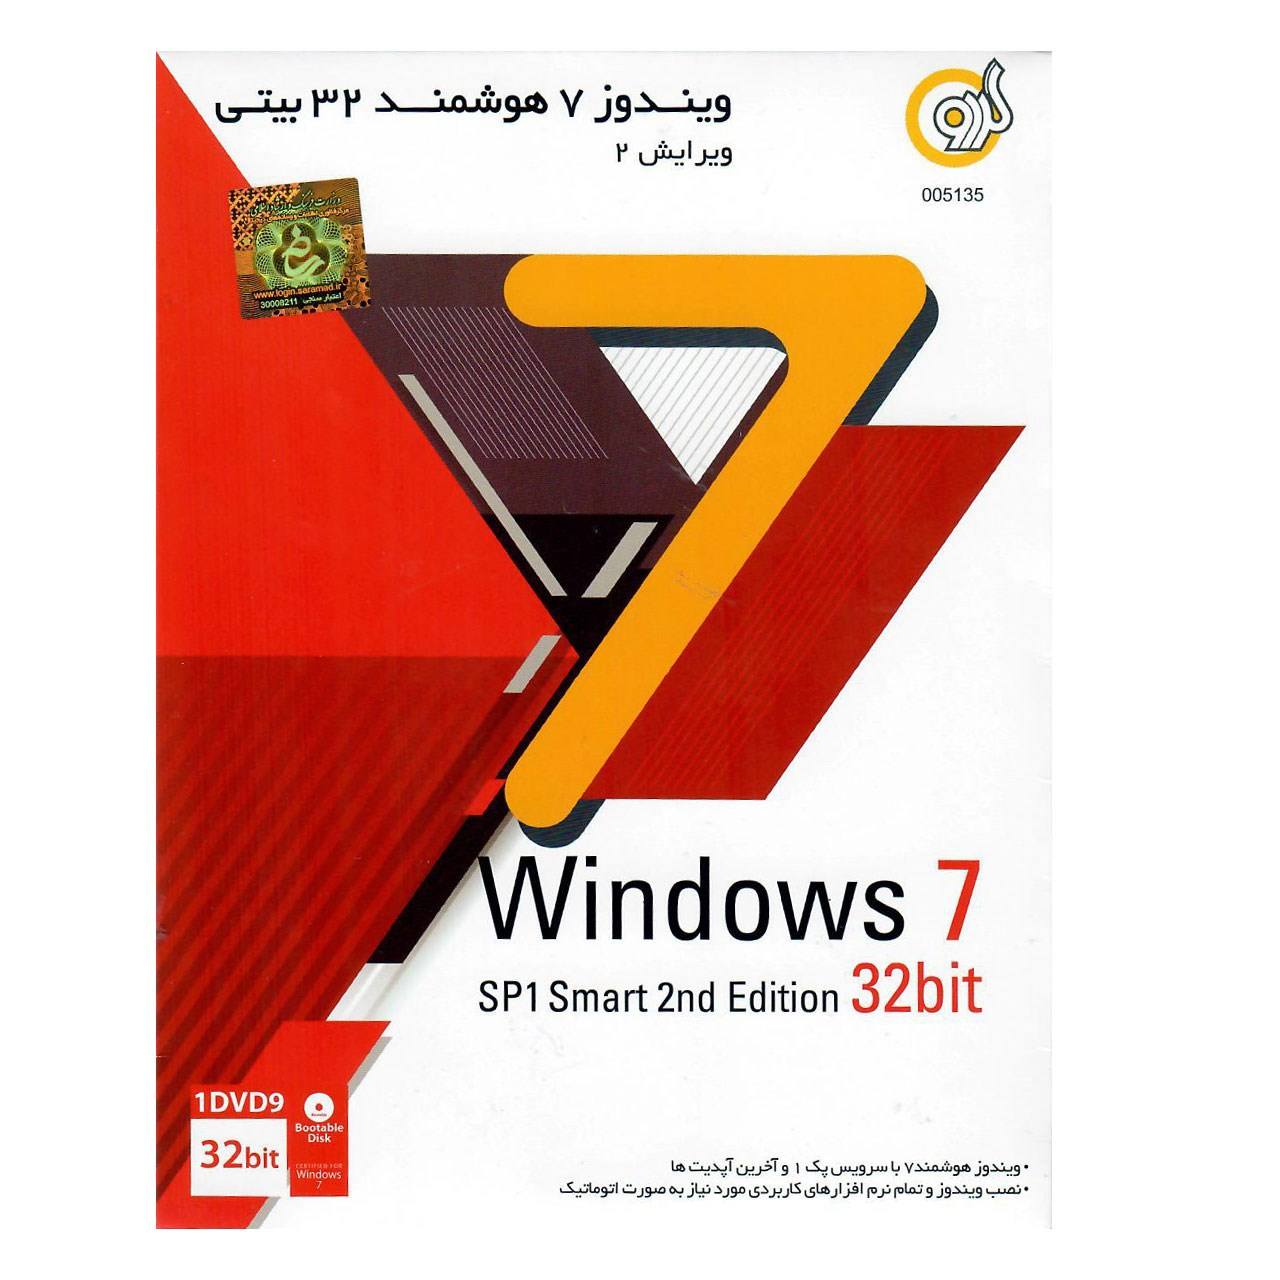 سیستم عامل Windows 7 نسخه 32 بیتی نشر گردو